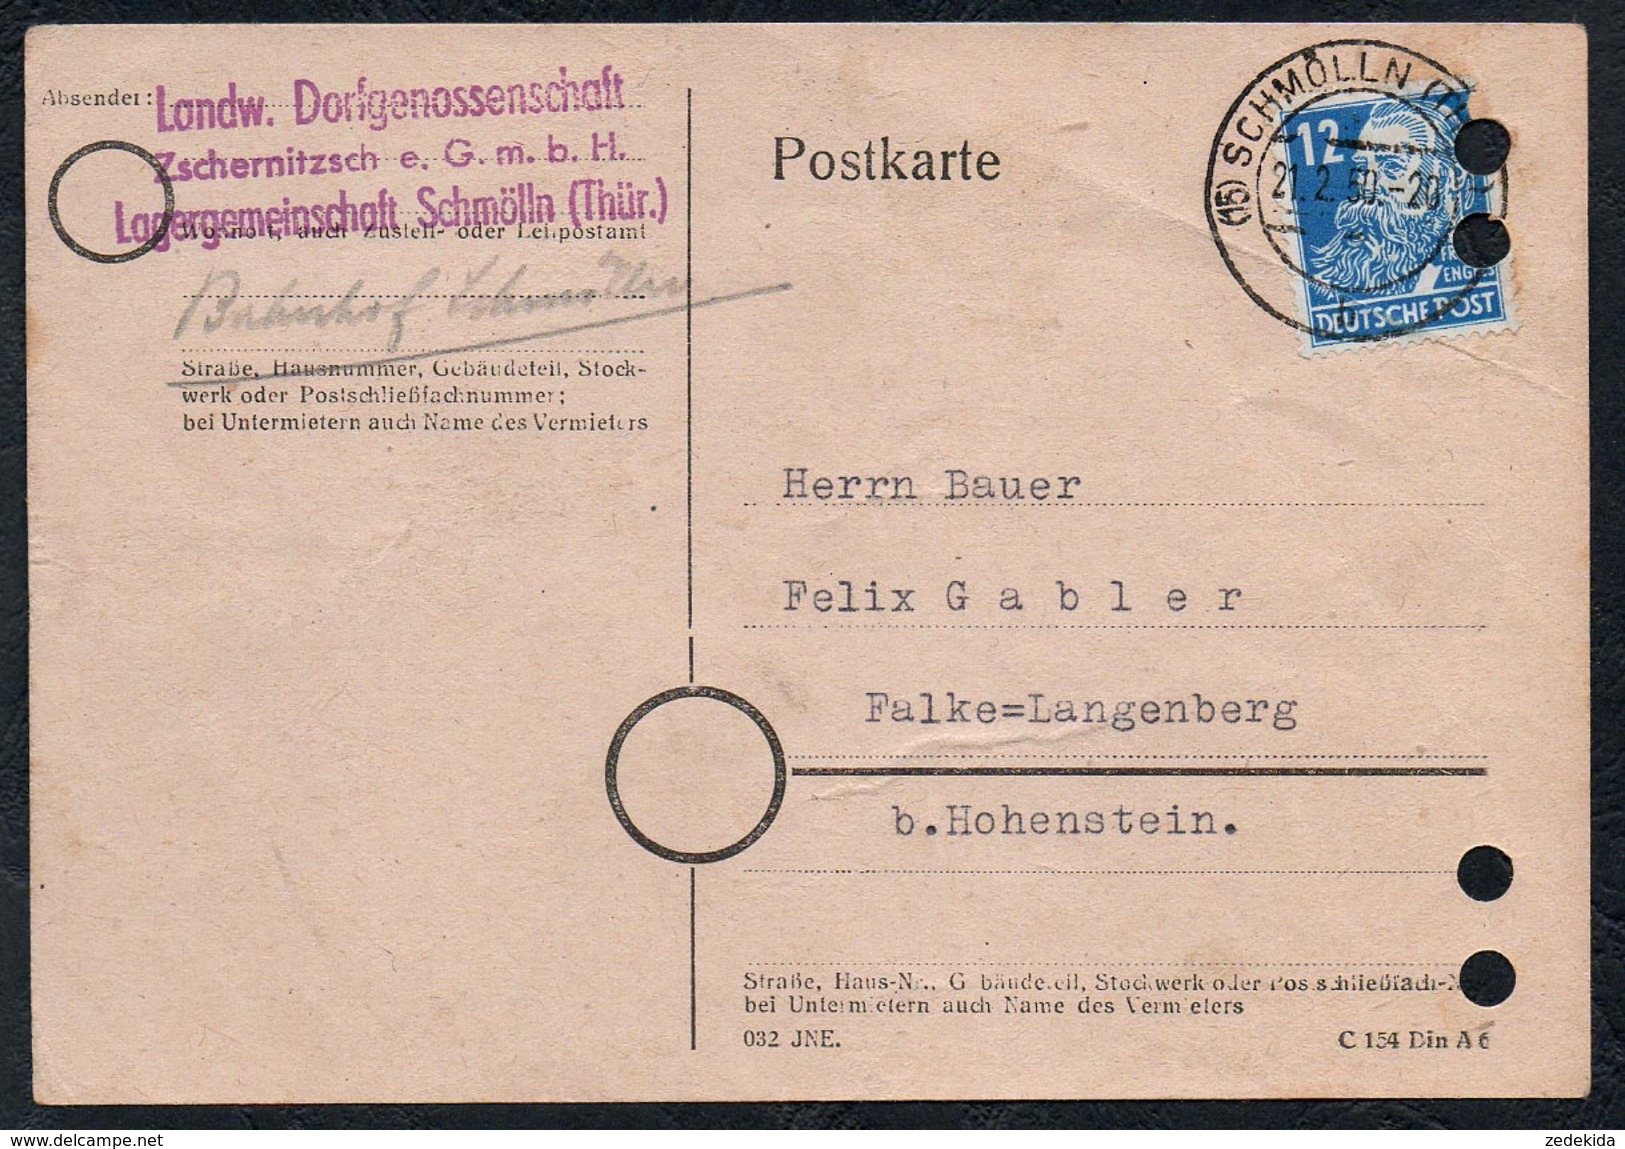 A6215 - Alte Postkarte - Bedarfspost - Schmölln - Landw. Dorfgenossenschaft - Nach Falke Langenberg 1950 - Schmoelln